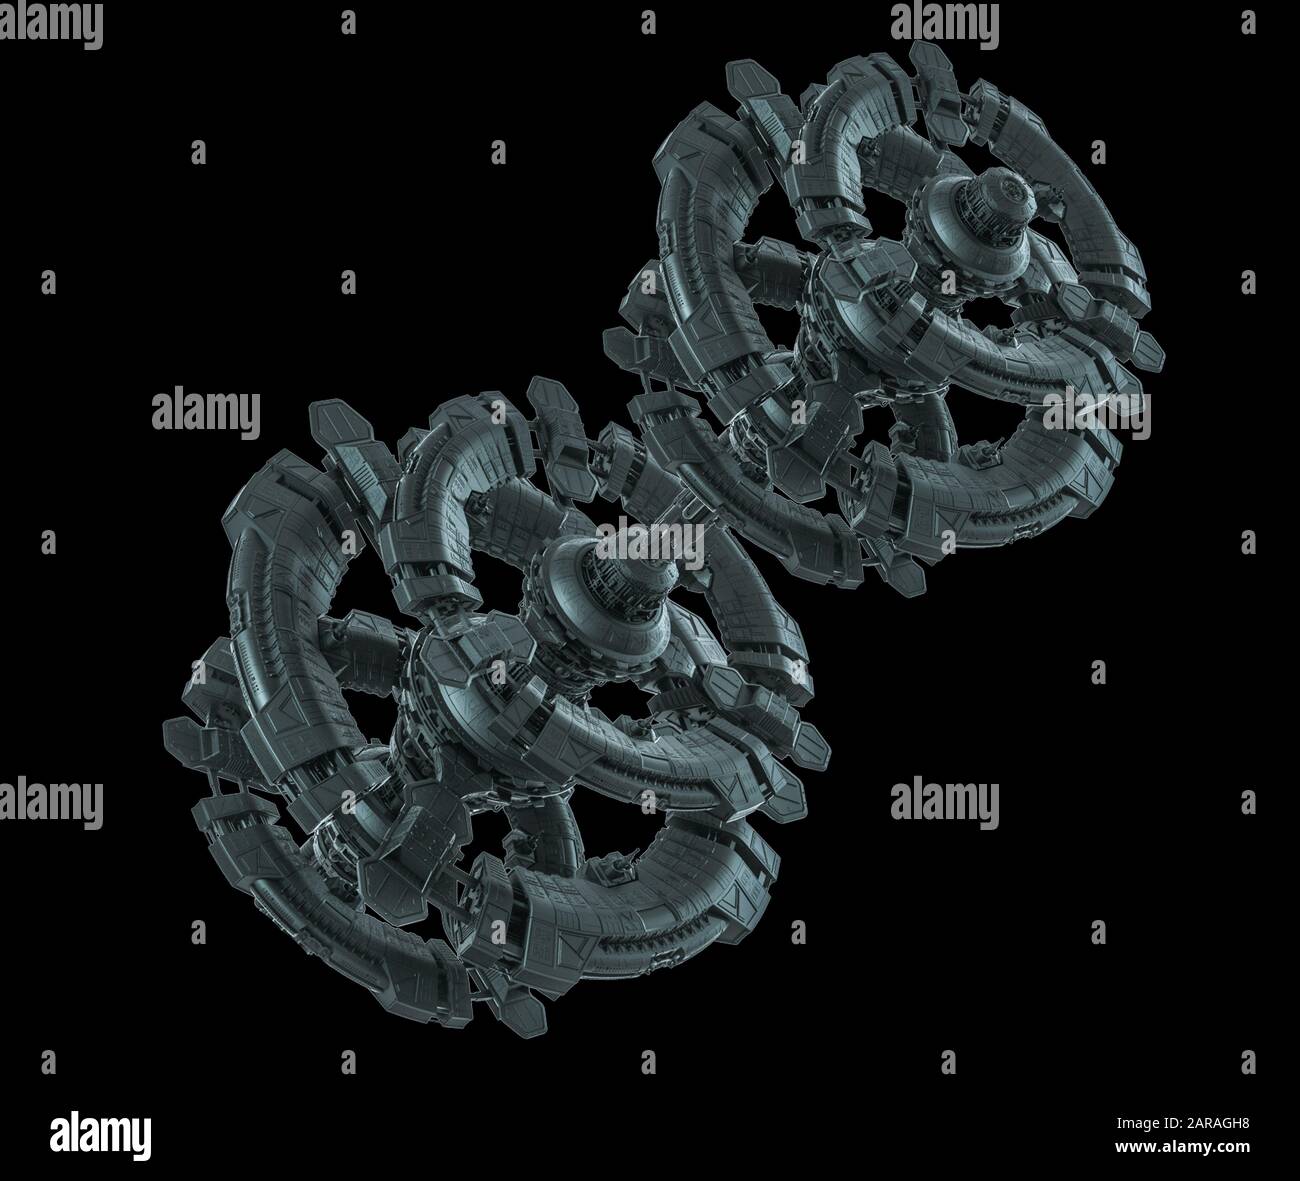 Raumschiff - Illustration schwarzer Hintergrund - 3D Illustration Stockfoto